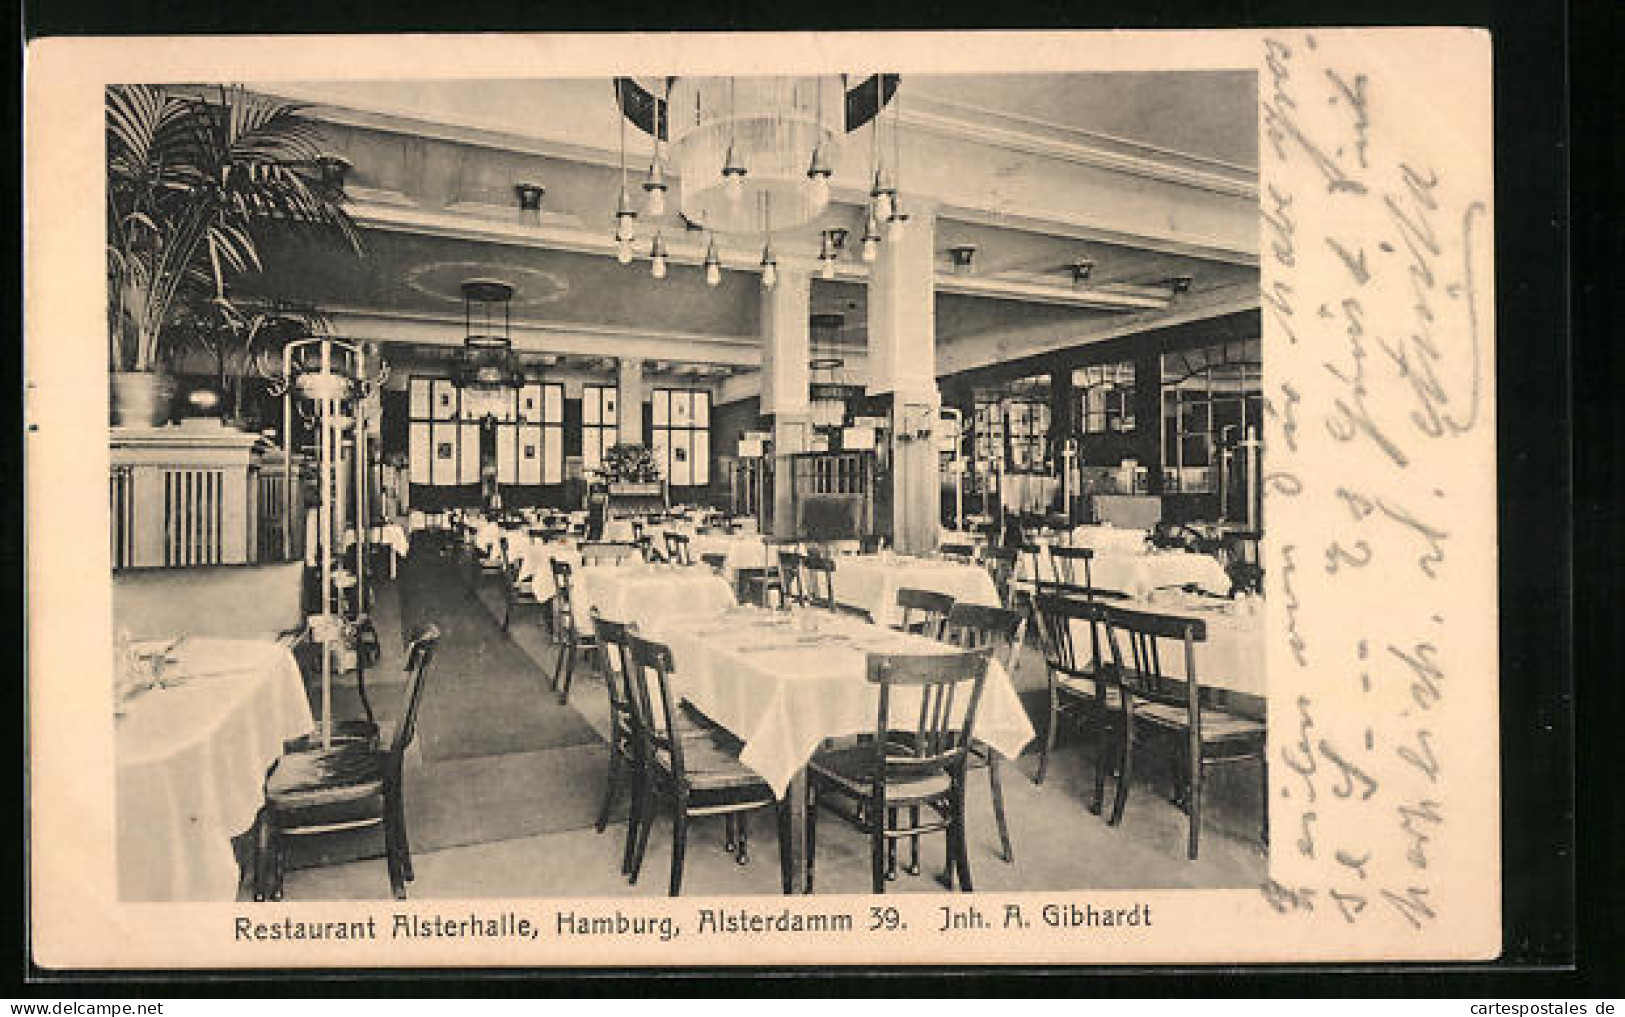 AK Hamburg, Restaurant Alsterhalle, Inh. A. Gibhardt  - Mitte